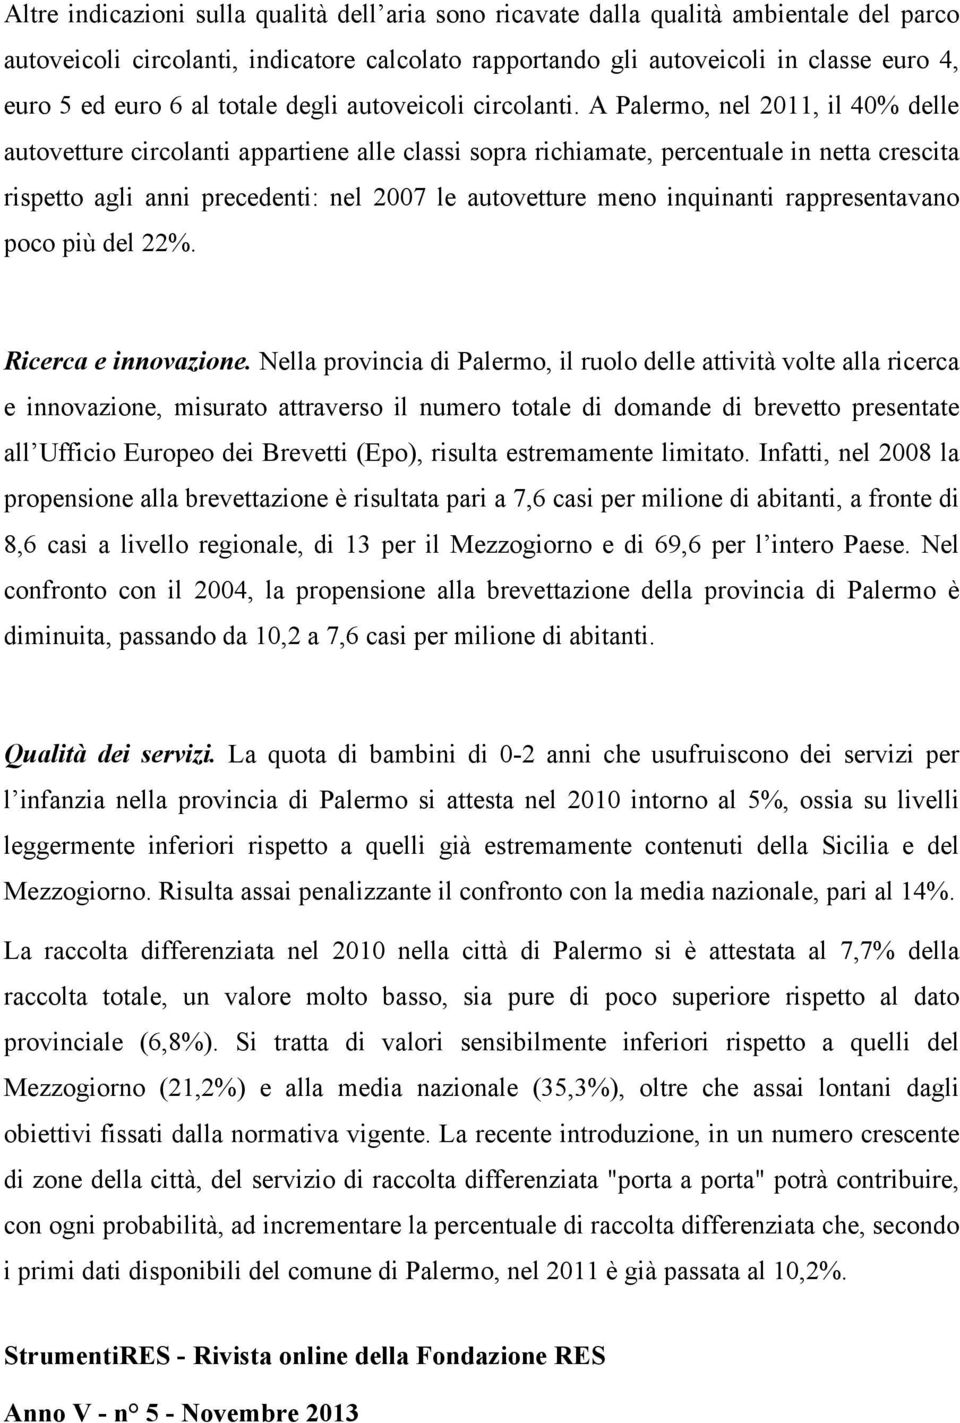 A Palermo, nel 2011, il 40% delle autovetture circolanti appartiene alle classi sopra richiamate, percentuale in netta crescita rispetto agli anni precedenti: nel 2007 le autovetture meno inquinanti